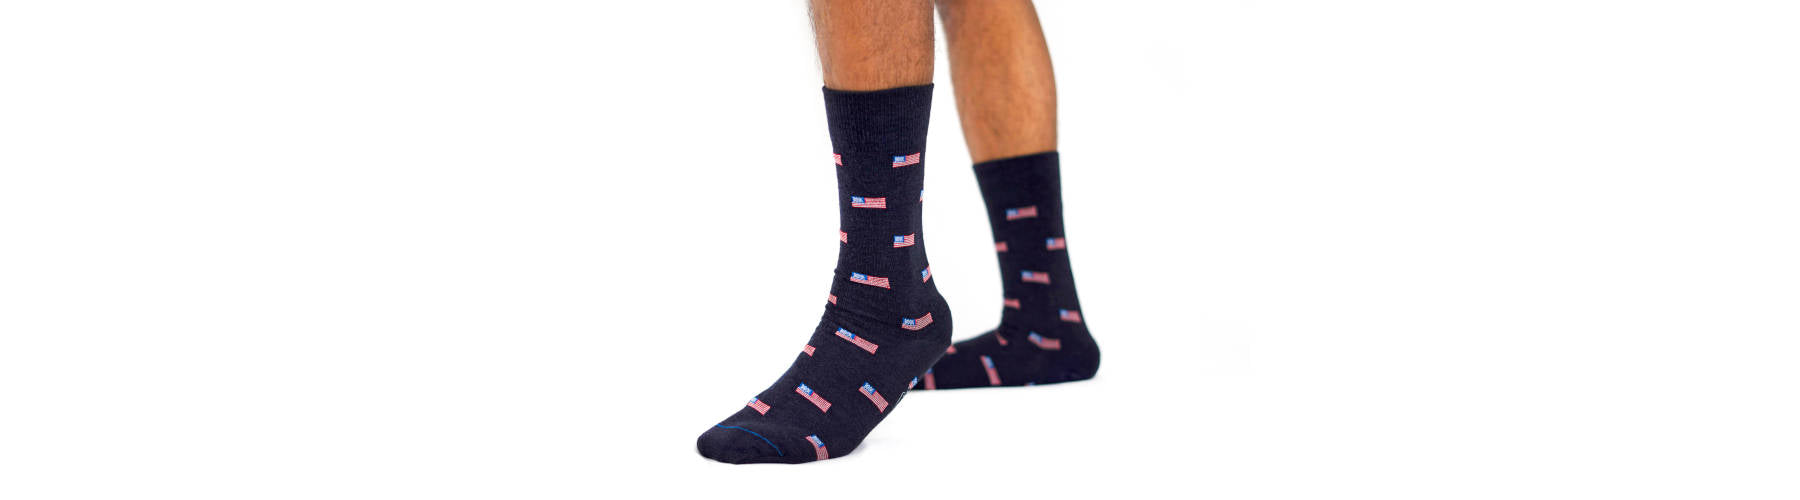 men's dress sock length guide